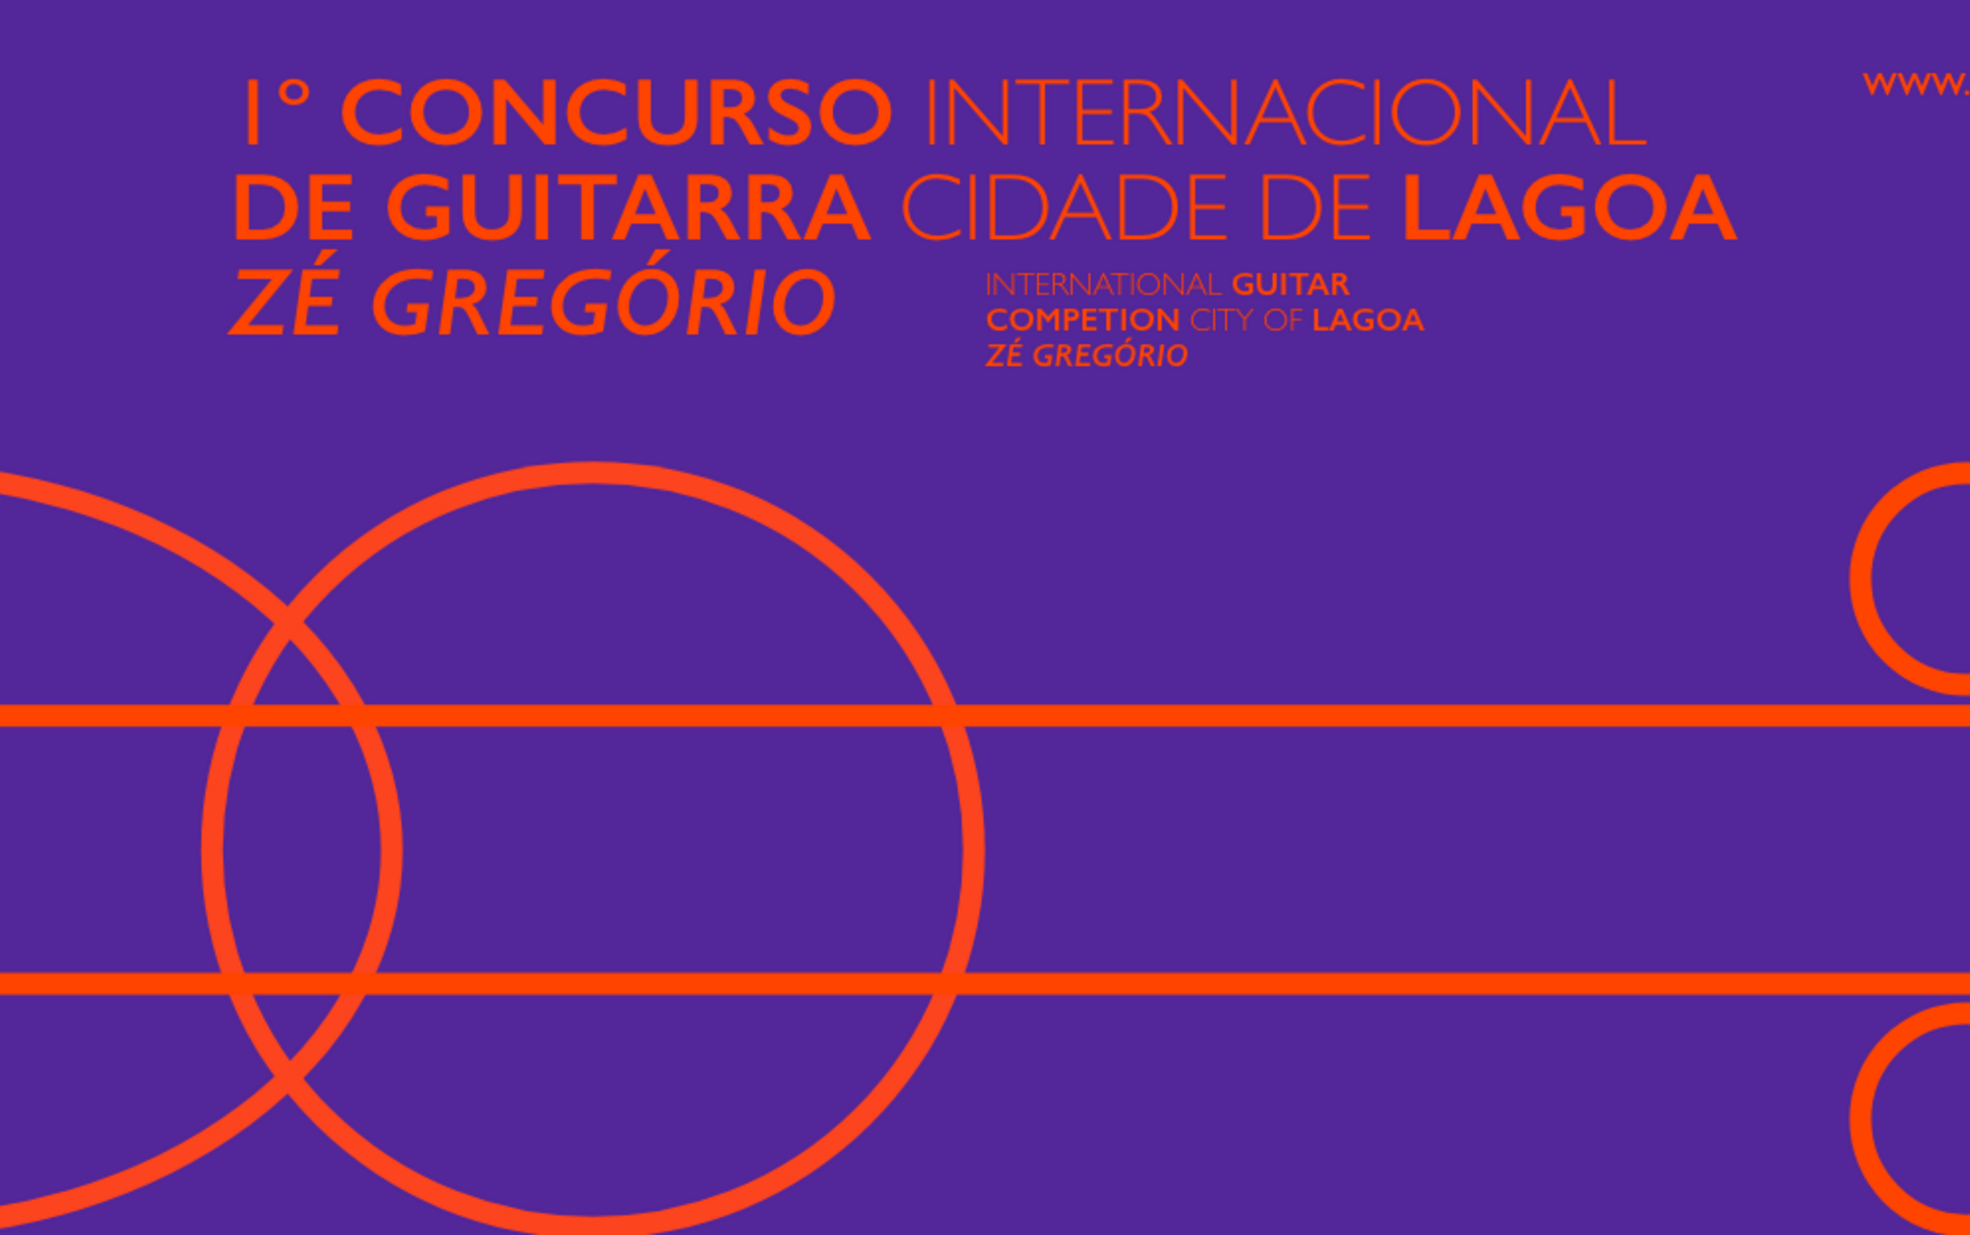 Concurso Internacional de Guitarra “Cidade de Lagoa”